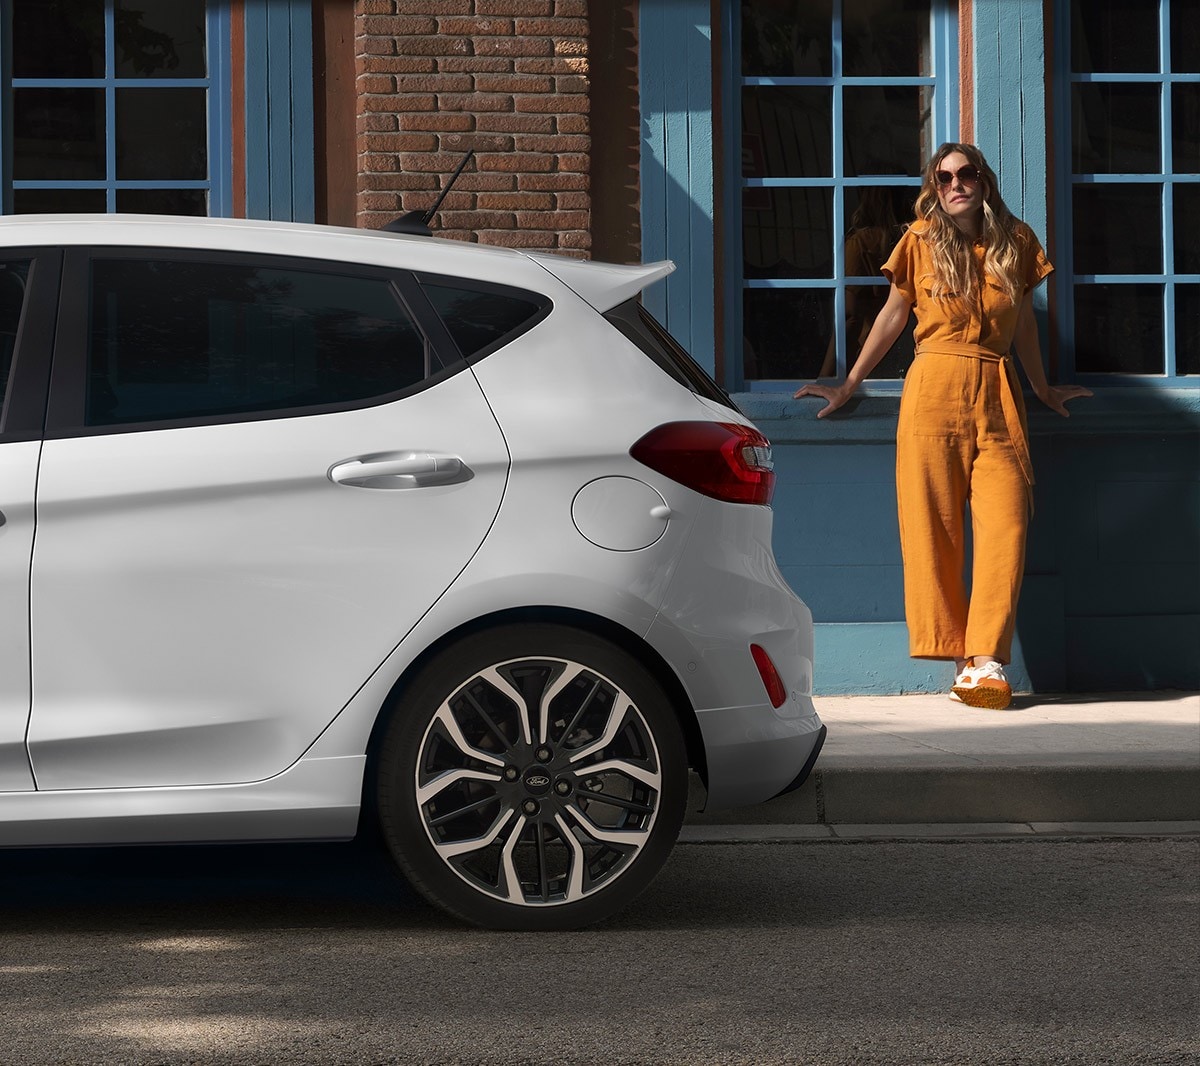 Ford Fiesta couleur blanche. Vue latérale, stationnant devant une maison avec une femme à l’arrière-plan.